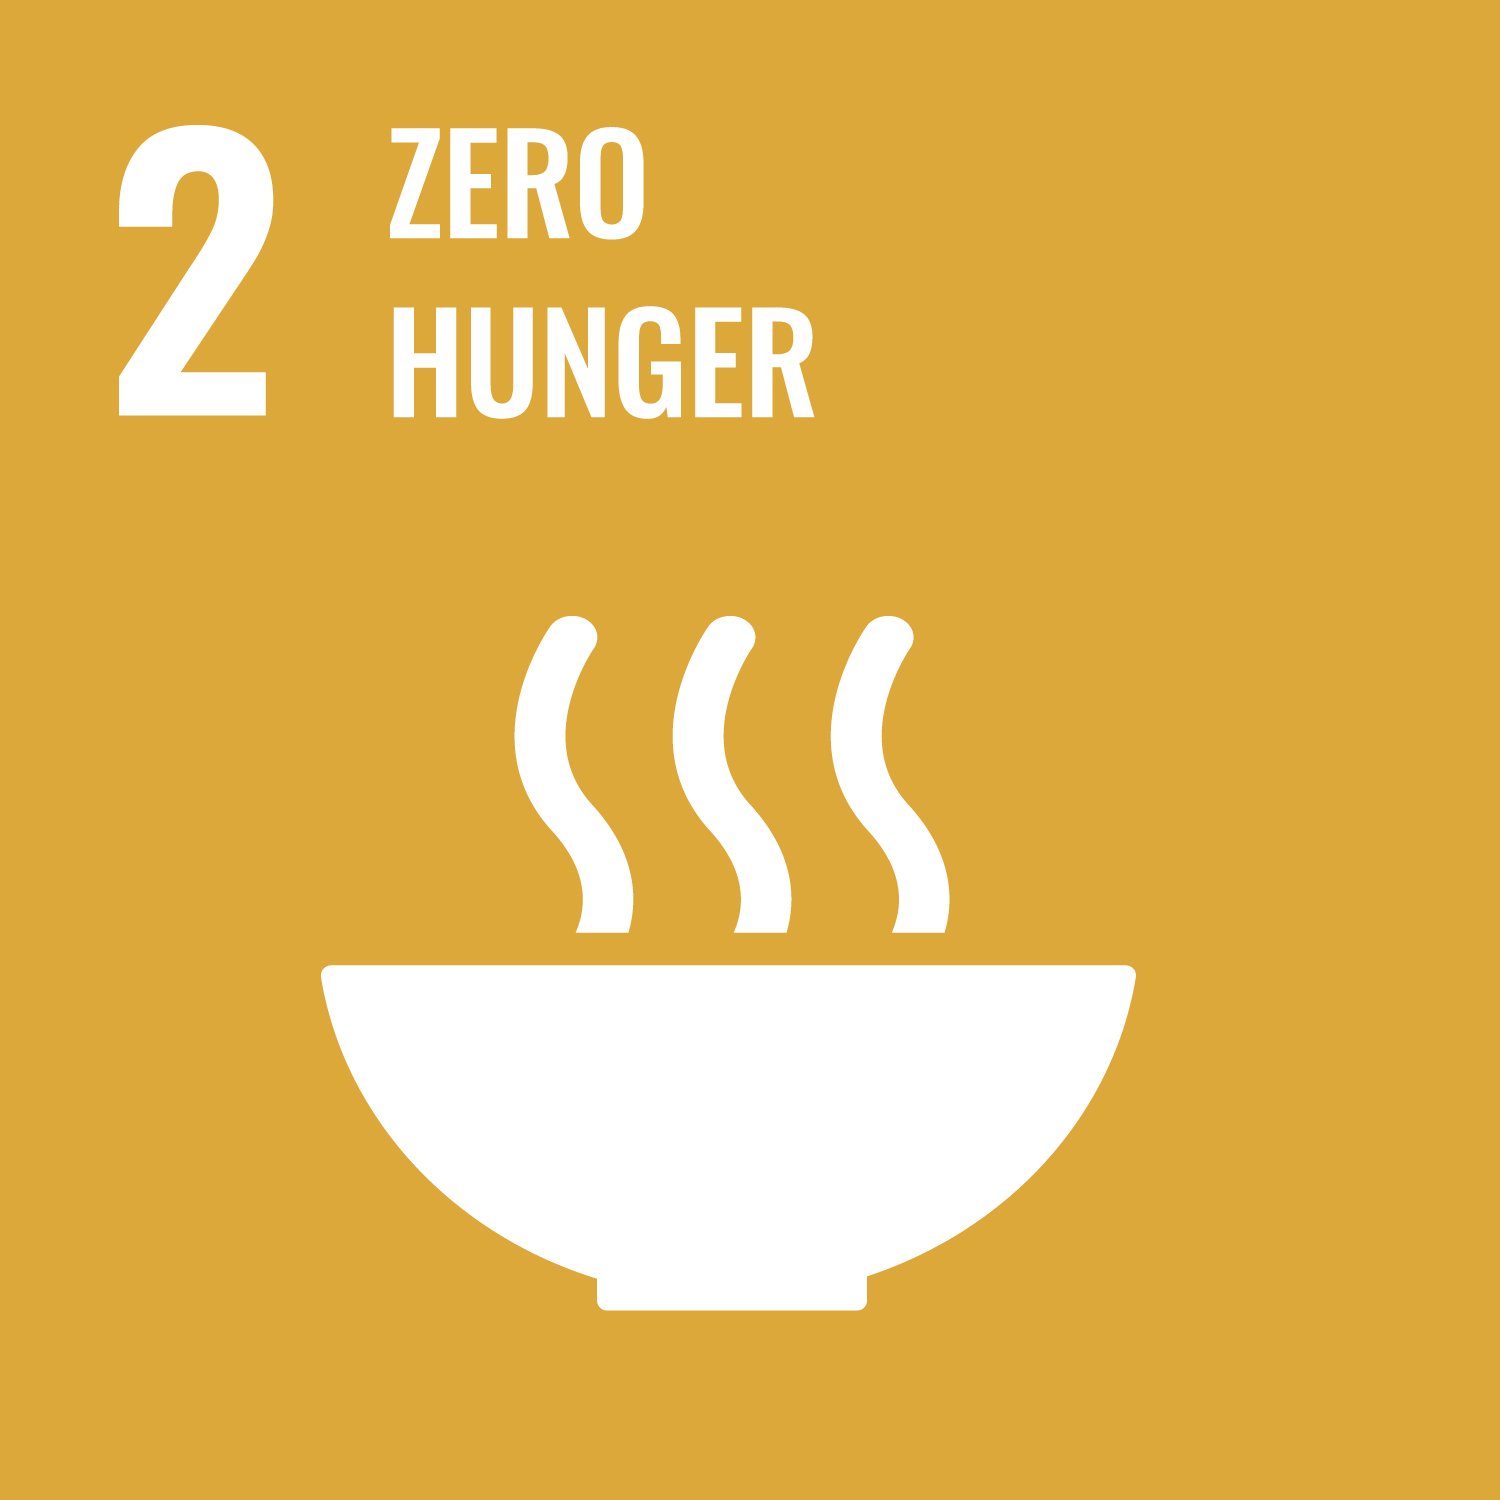 SDG number 2 Zero hunger